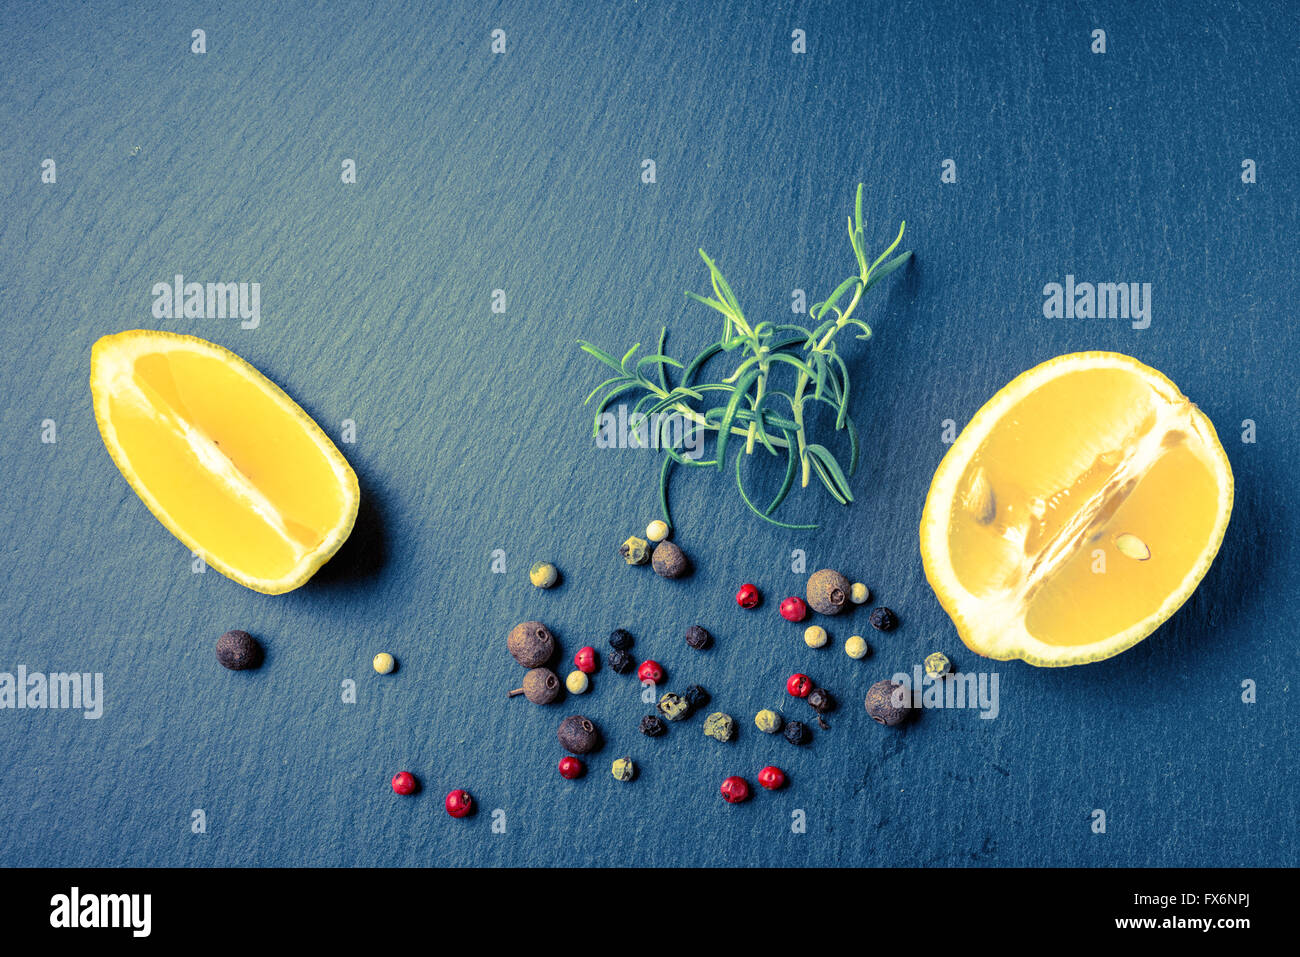 Vue de dessus, de romarin et de citron frais poivrons secs sur fond ardoise, Close up, style instagram Banque D'Images